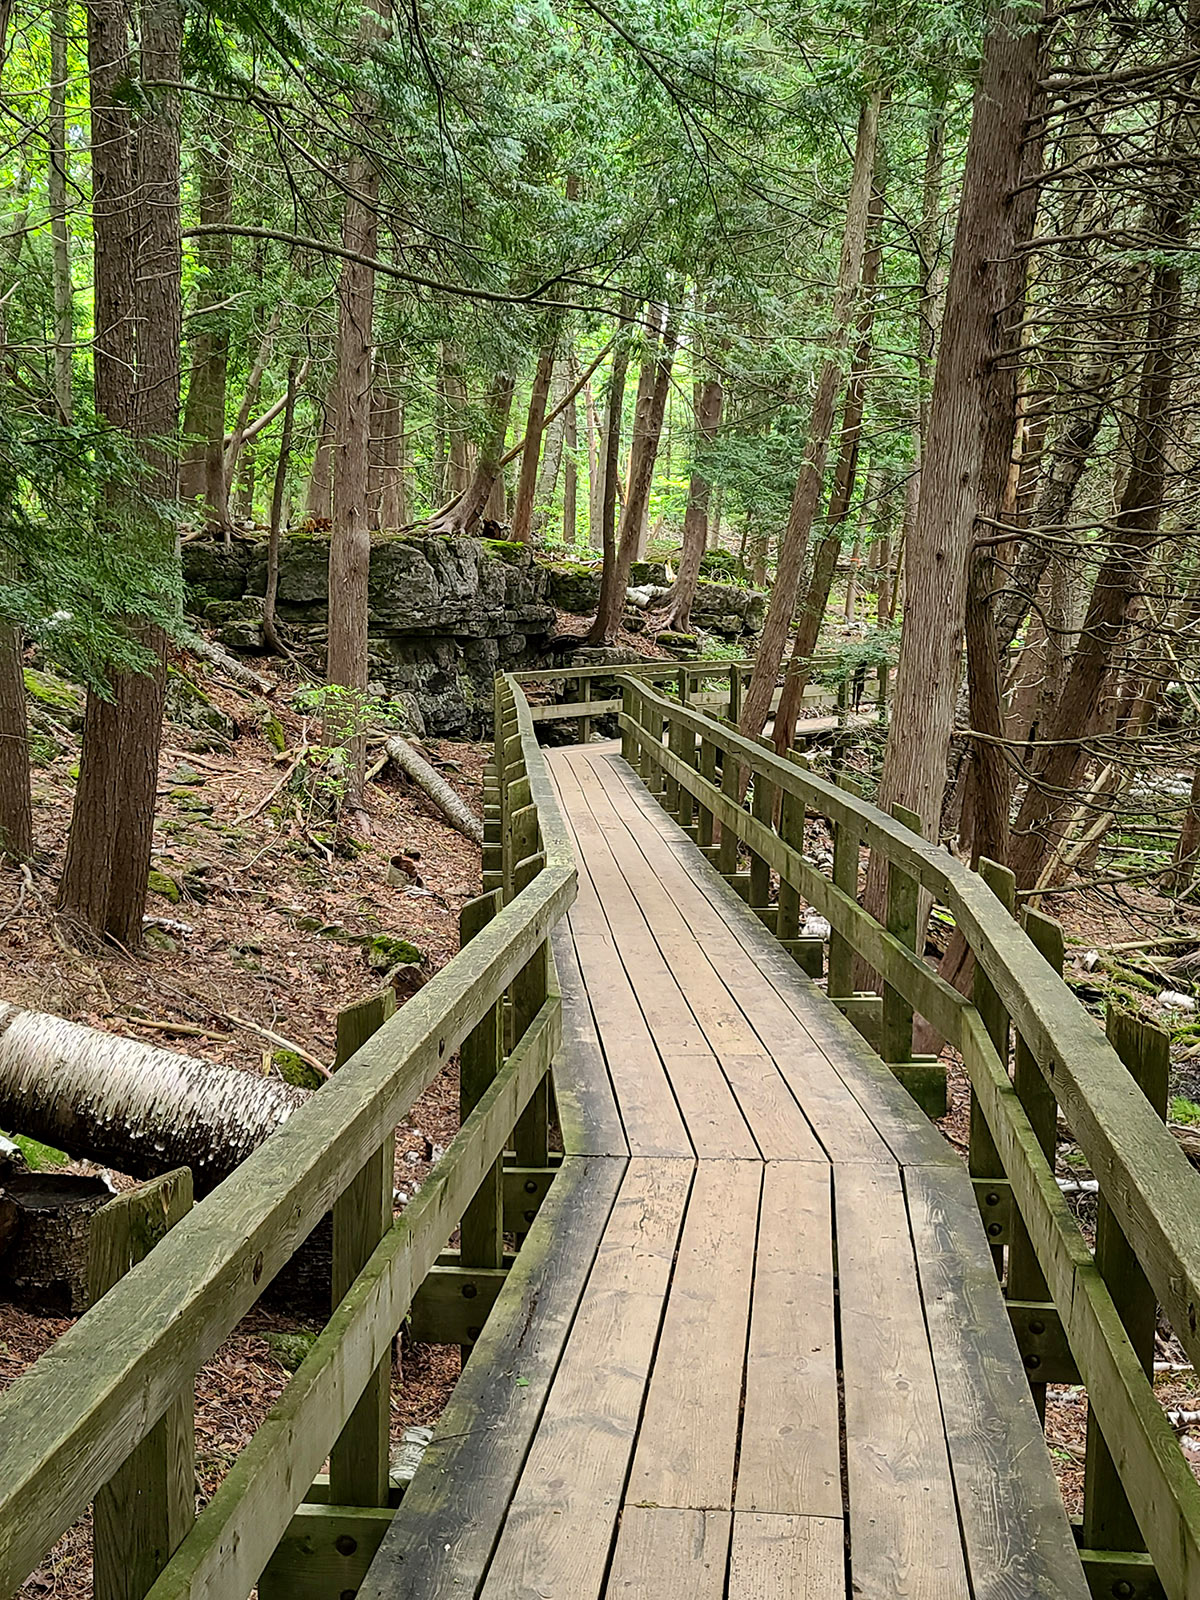 A boardwalk winding through a forest.